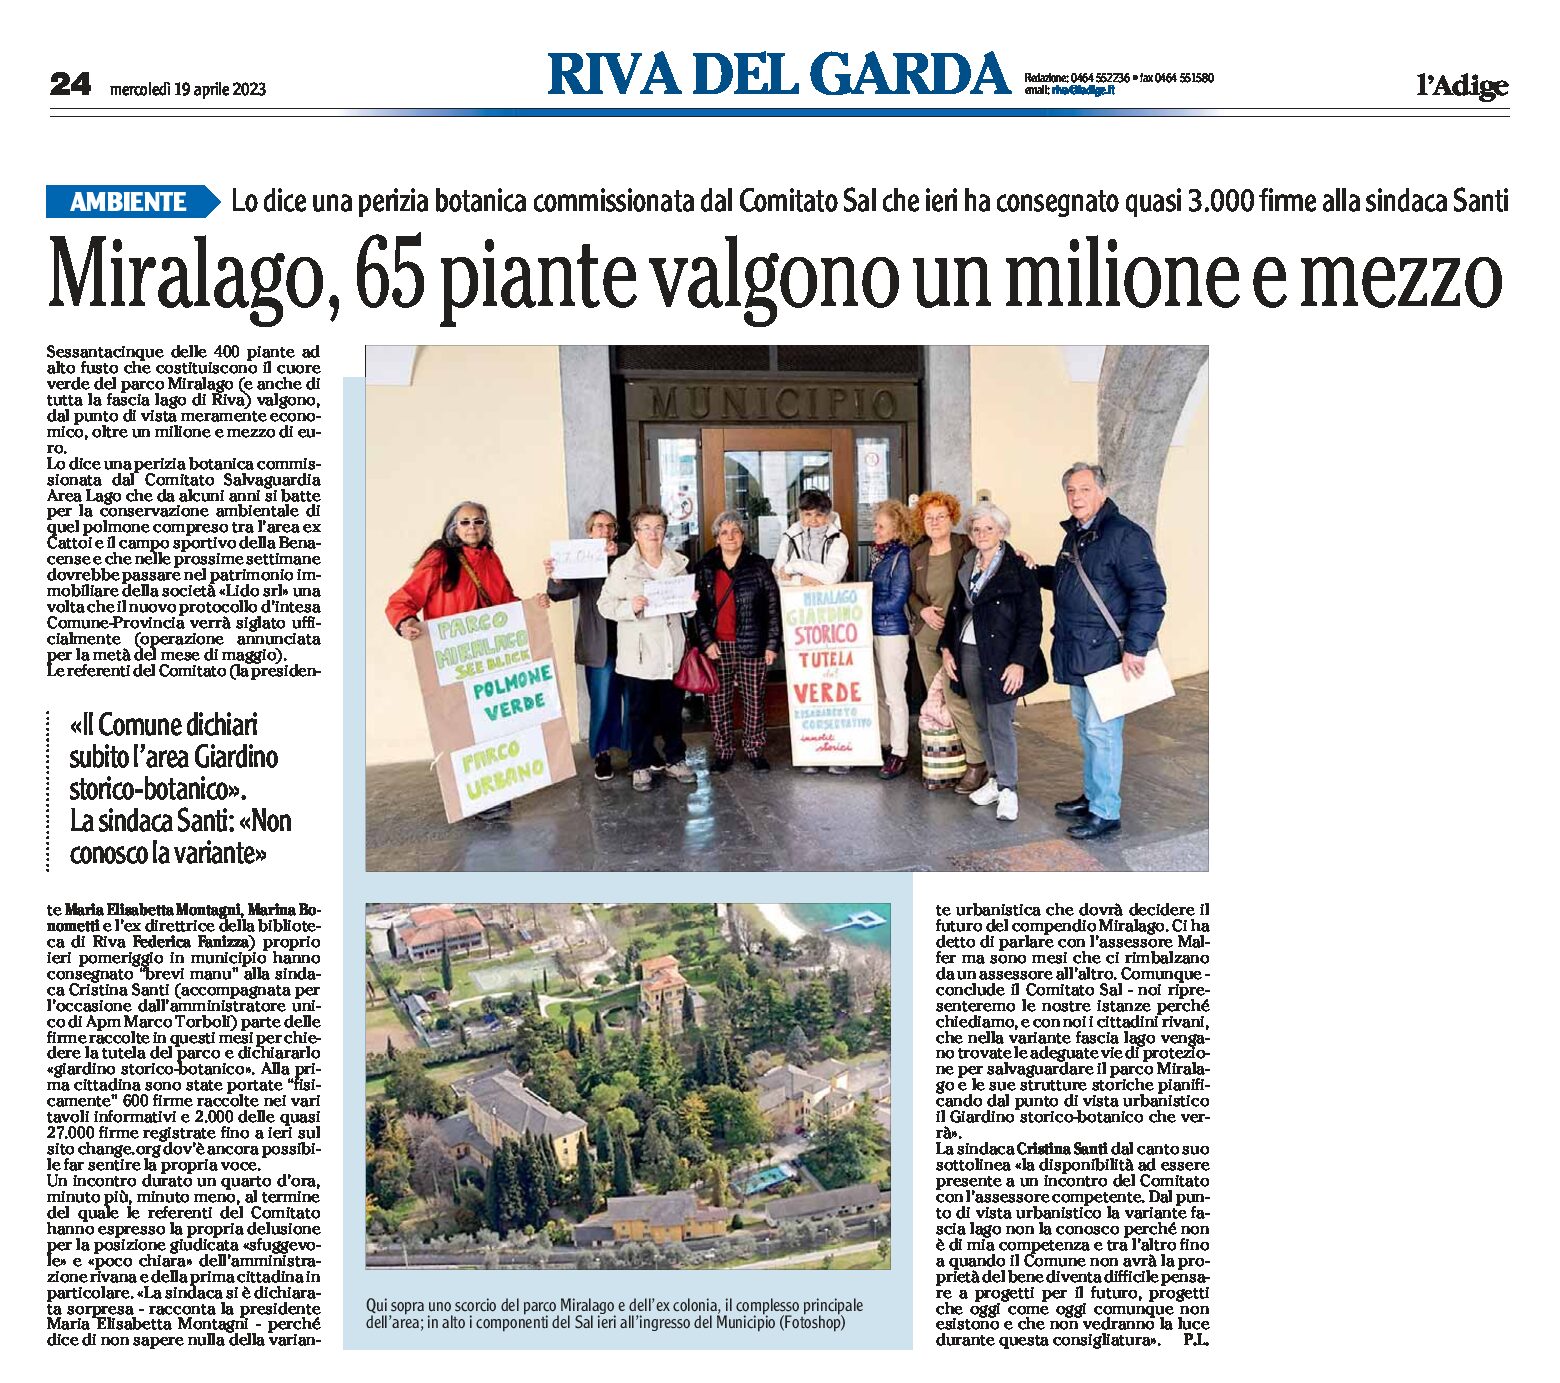 Riva, Miralago: ieri il Comitato Sal ha consegnato alla sindaca Santi quasi 3mila firme